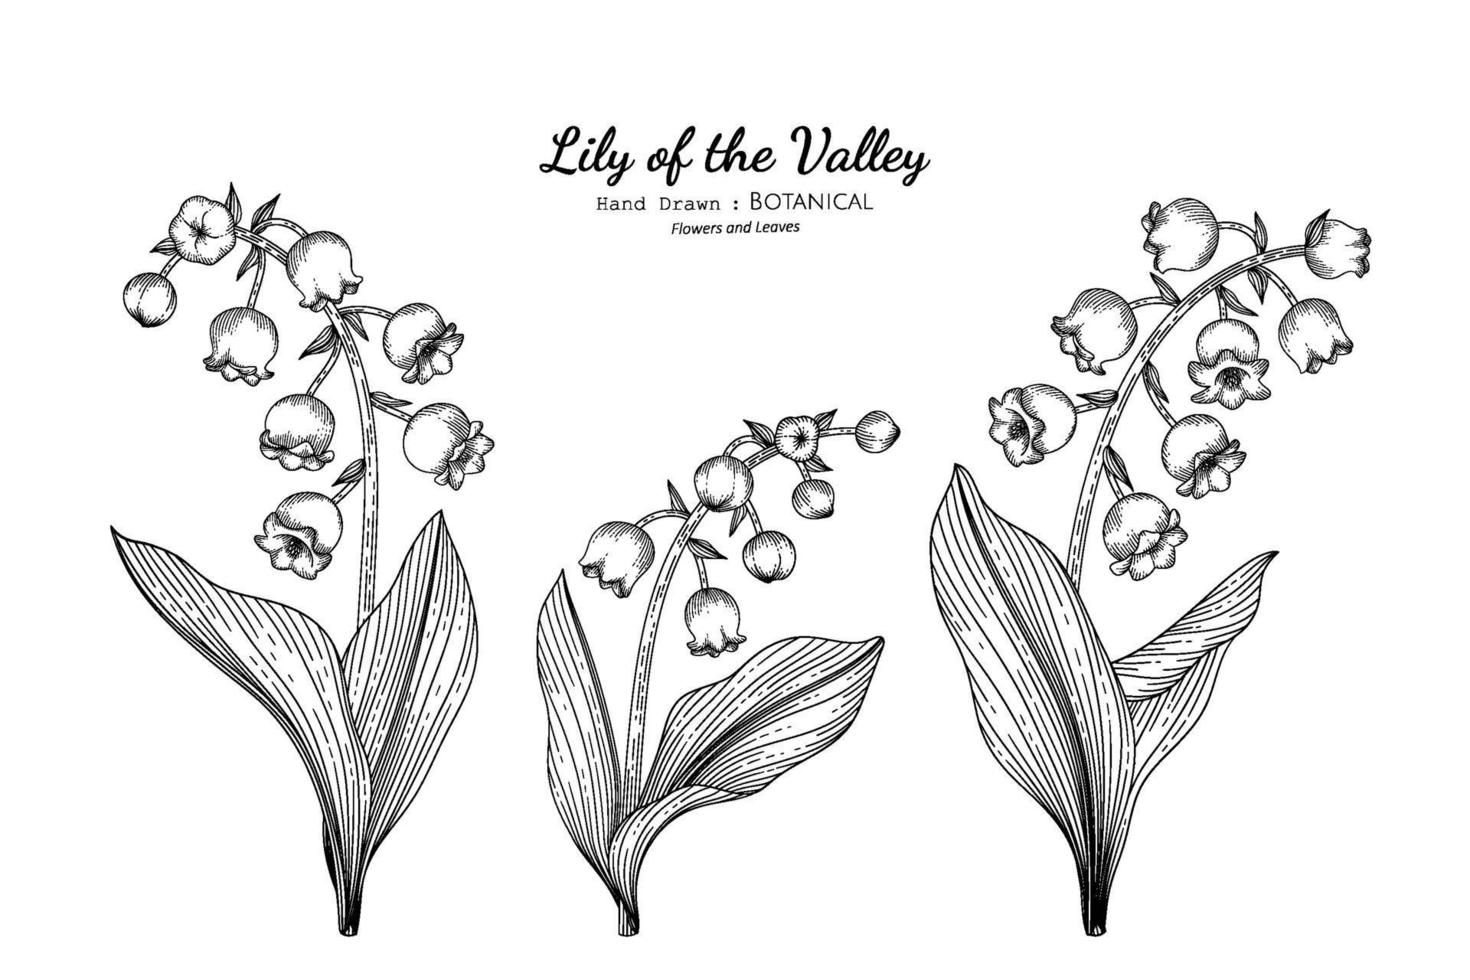 illustrazione botanica disegnata a mano del fiore e della foglia del giglio della valle con la linea arte. vettore